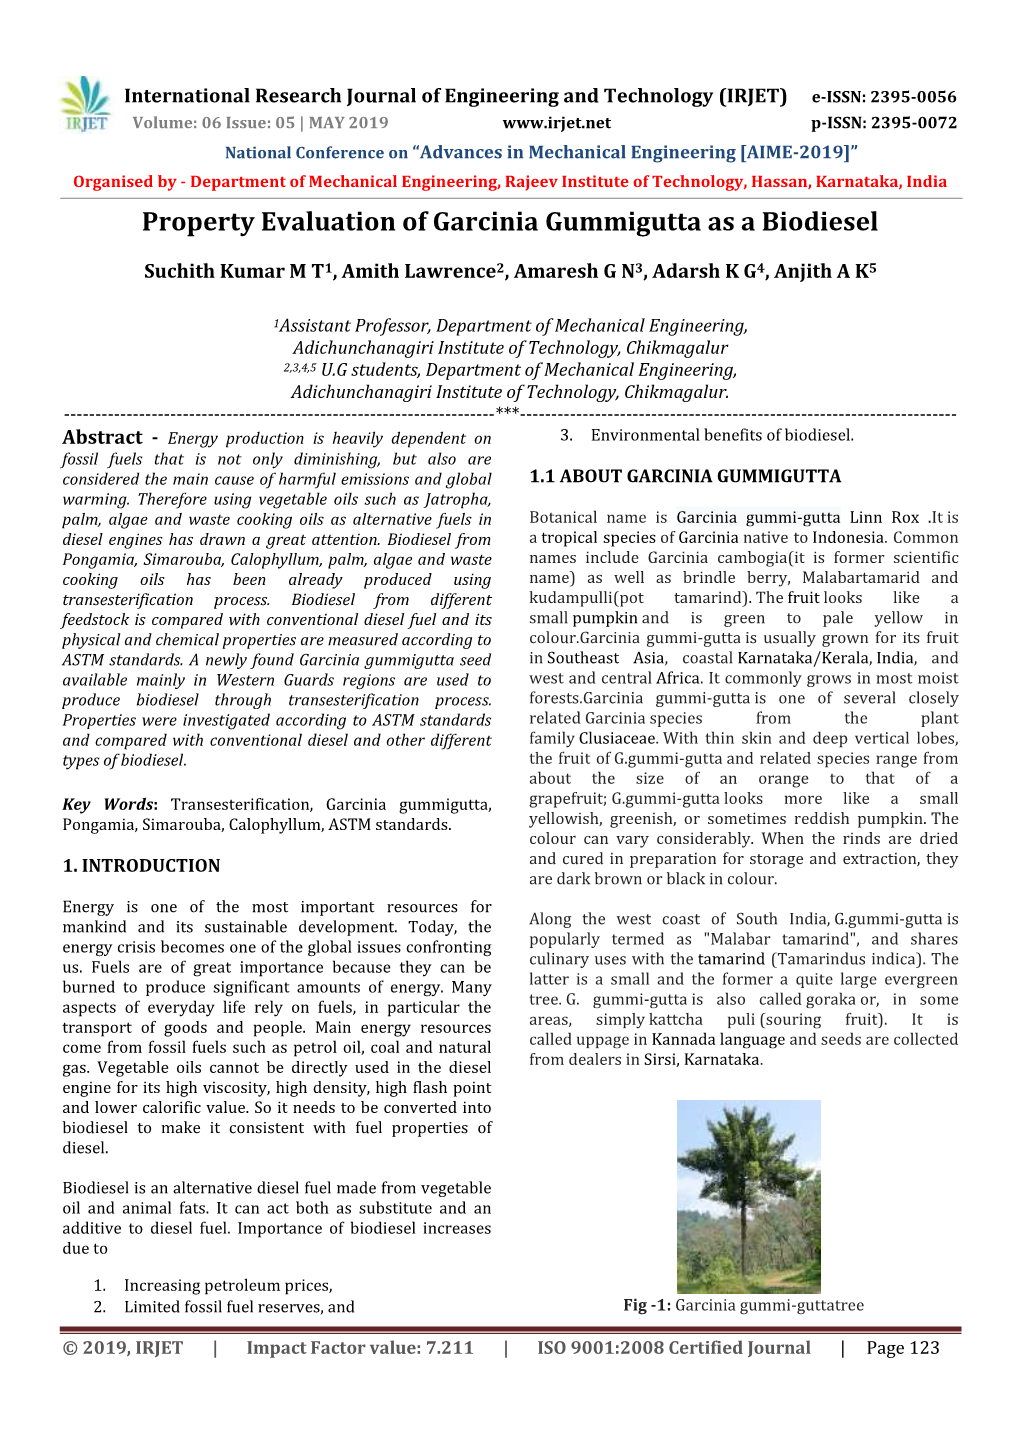 Property Evaluation of Garcinia Gummigutta As a Biodiesel